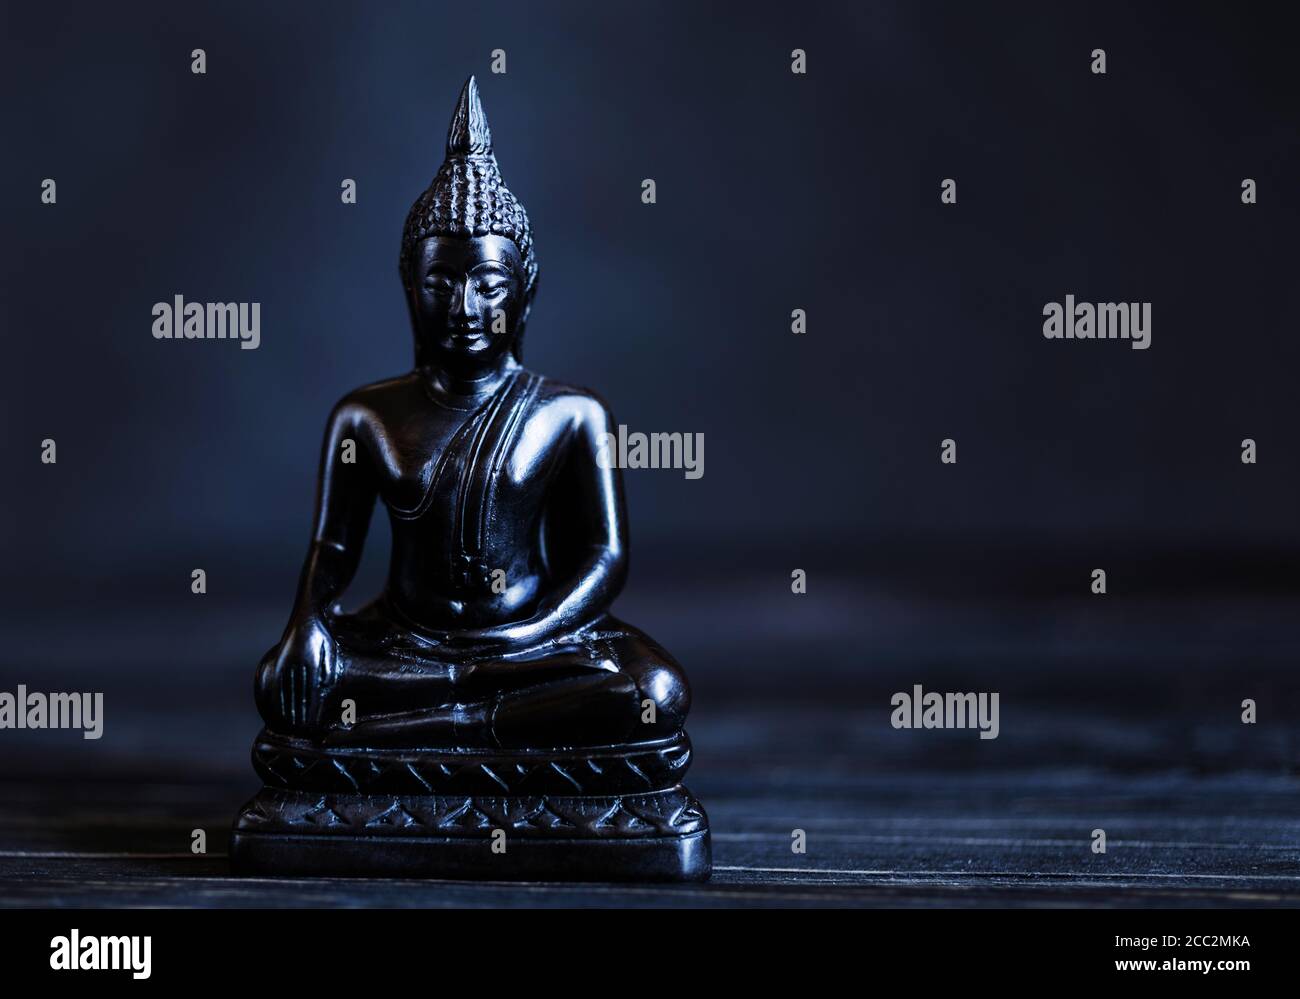 Símbolo del budismo. Buda antiguo Shakyamuni sobre un fondo oscuro. Concepto de calma. Espacio de copia. Foto de stock